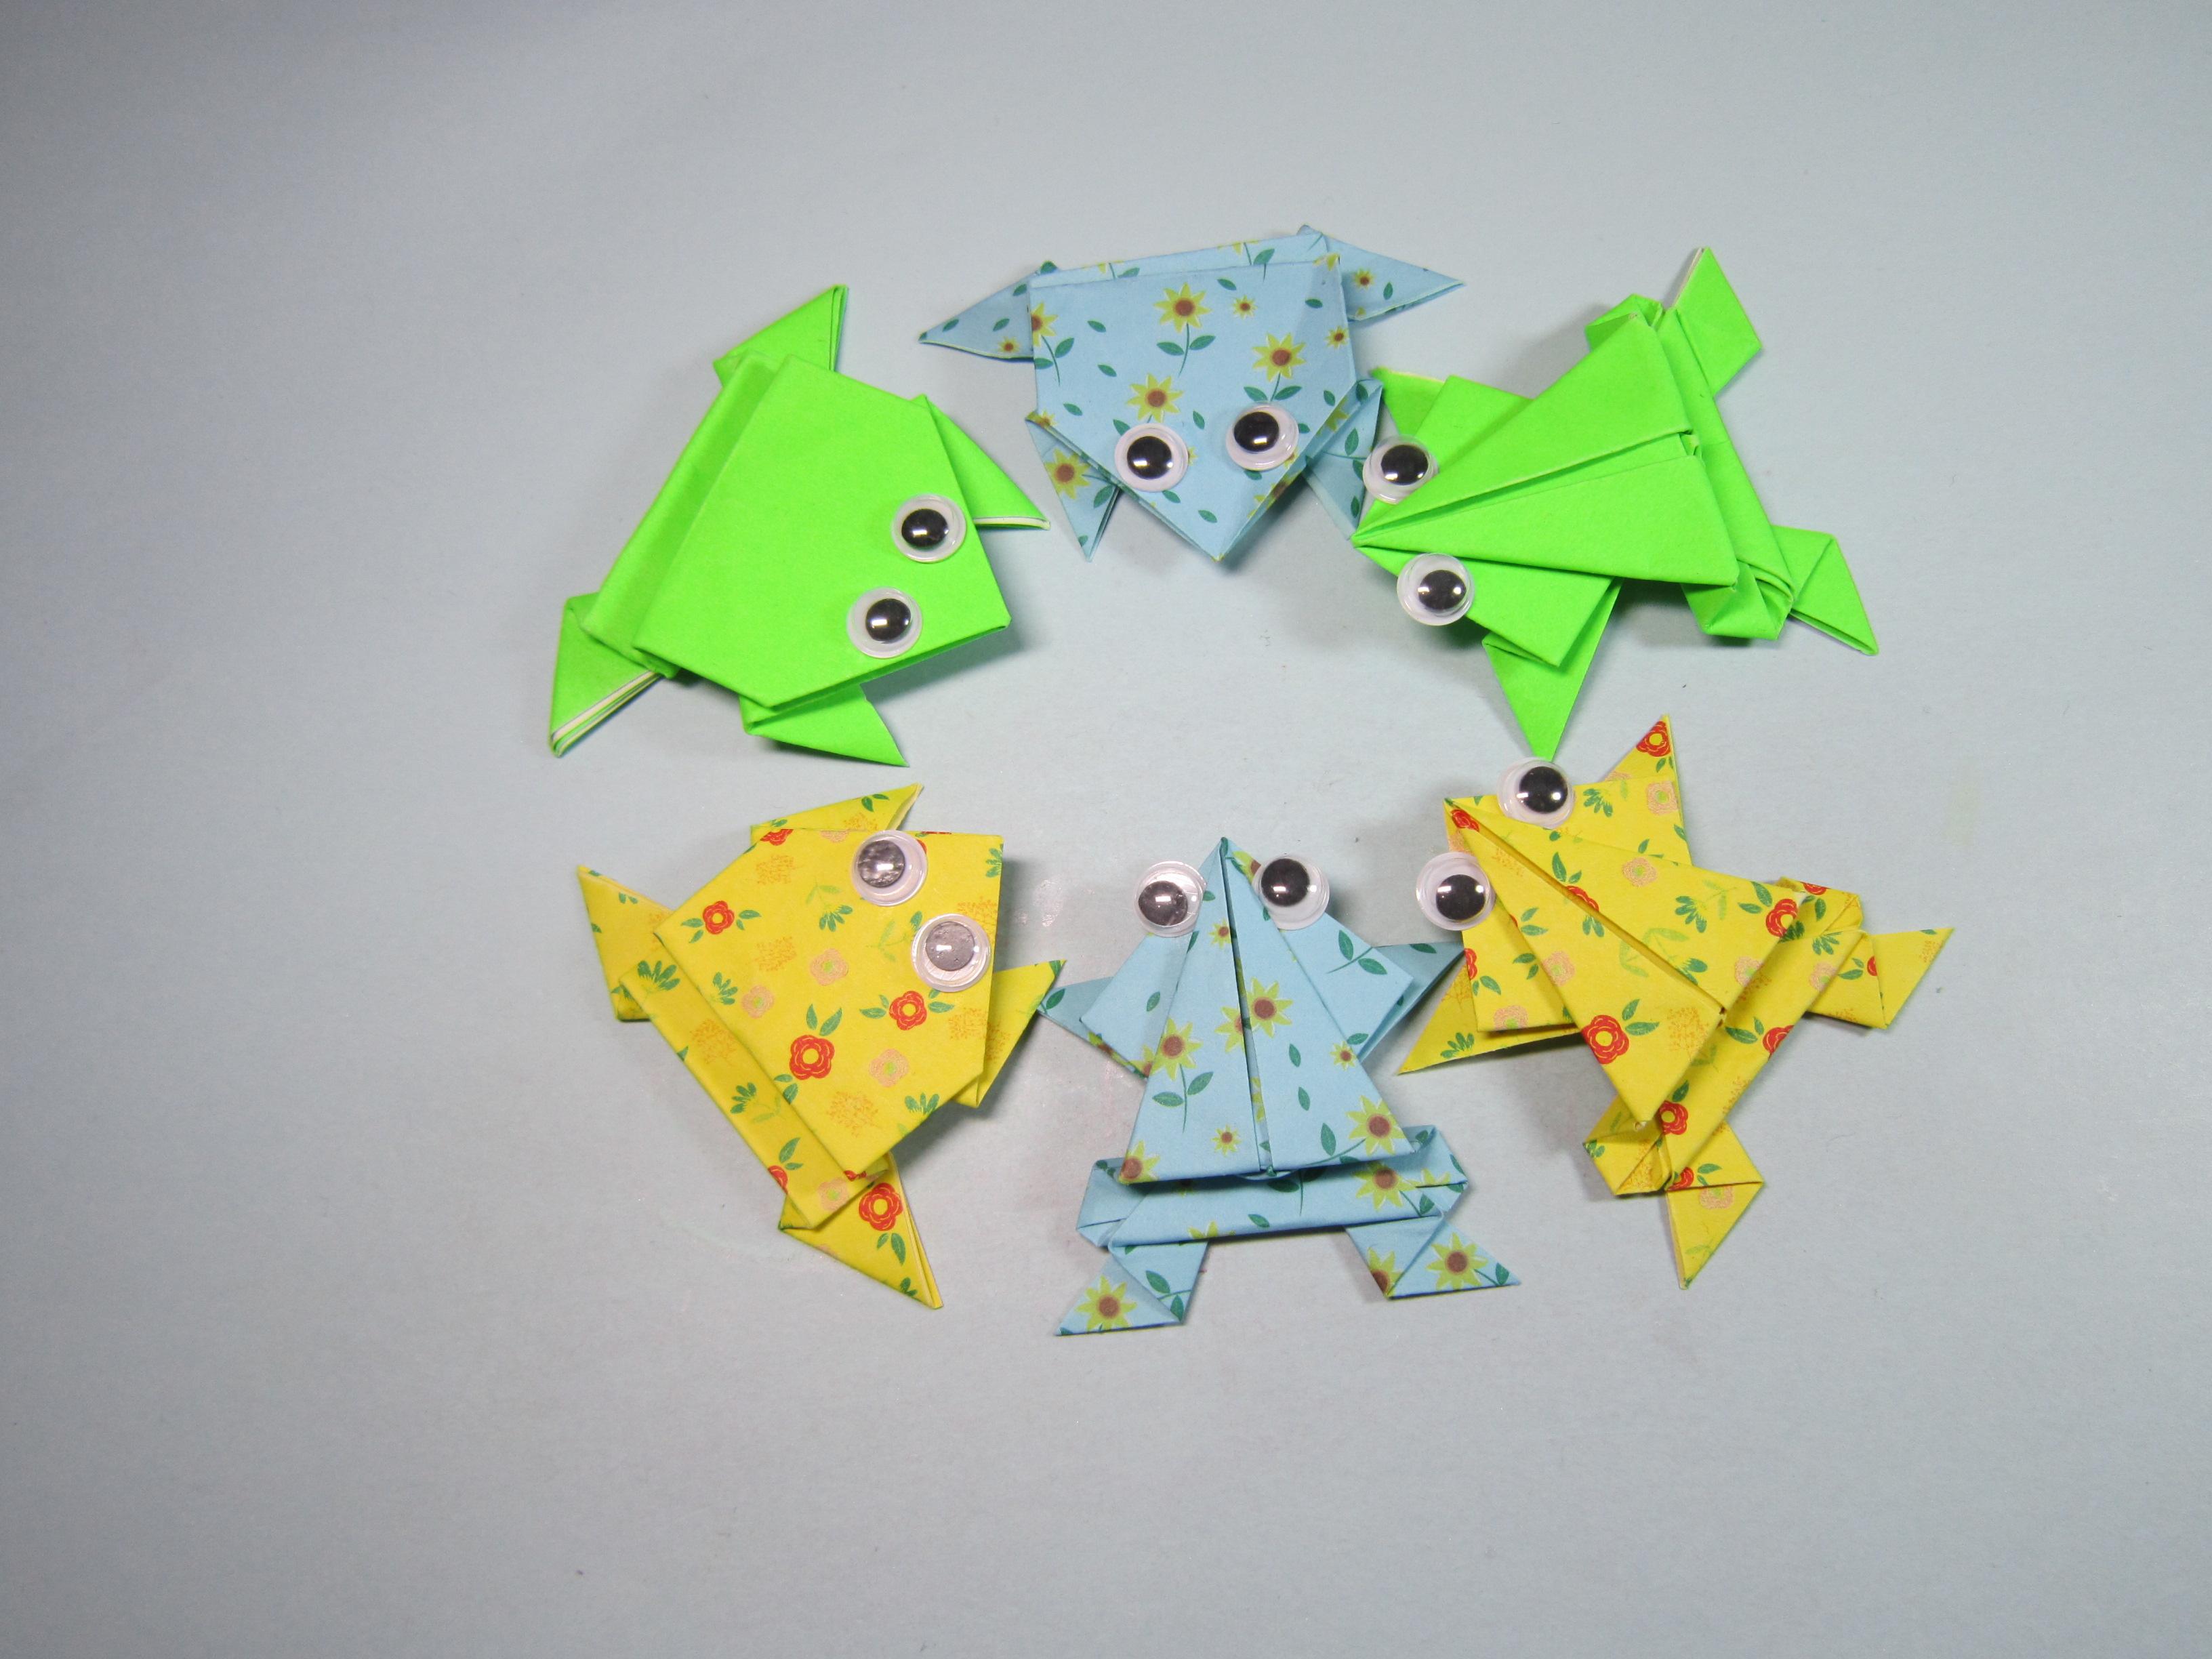 2种不同的青蛙折纸教程,折法简单一学就会,手工折纸